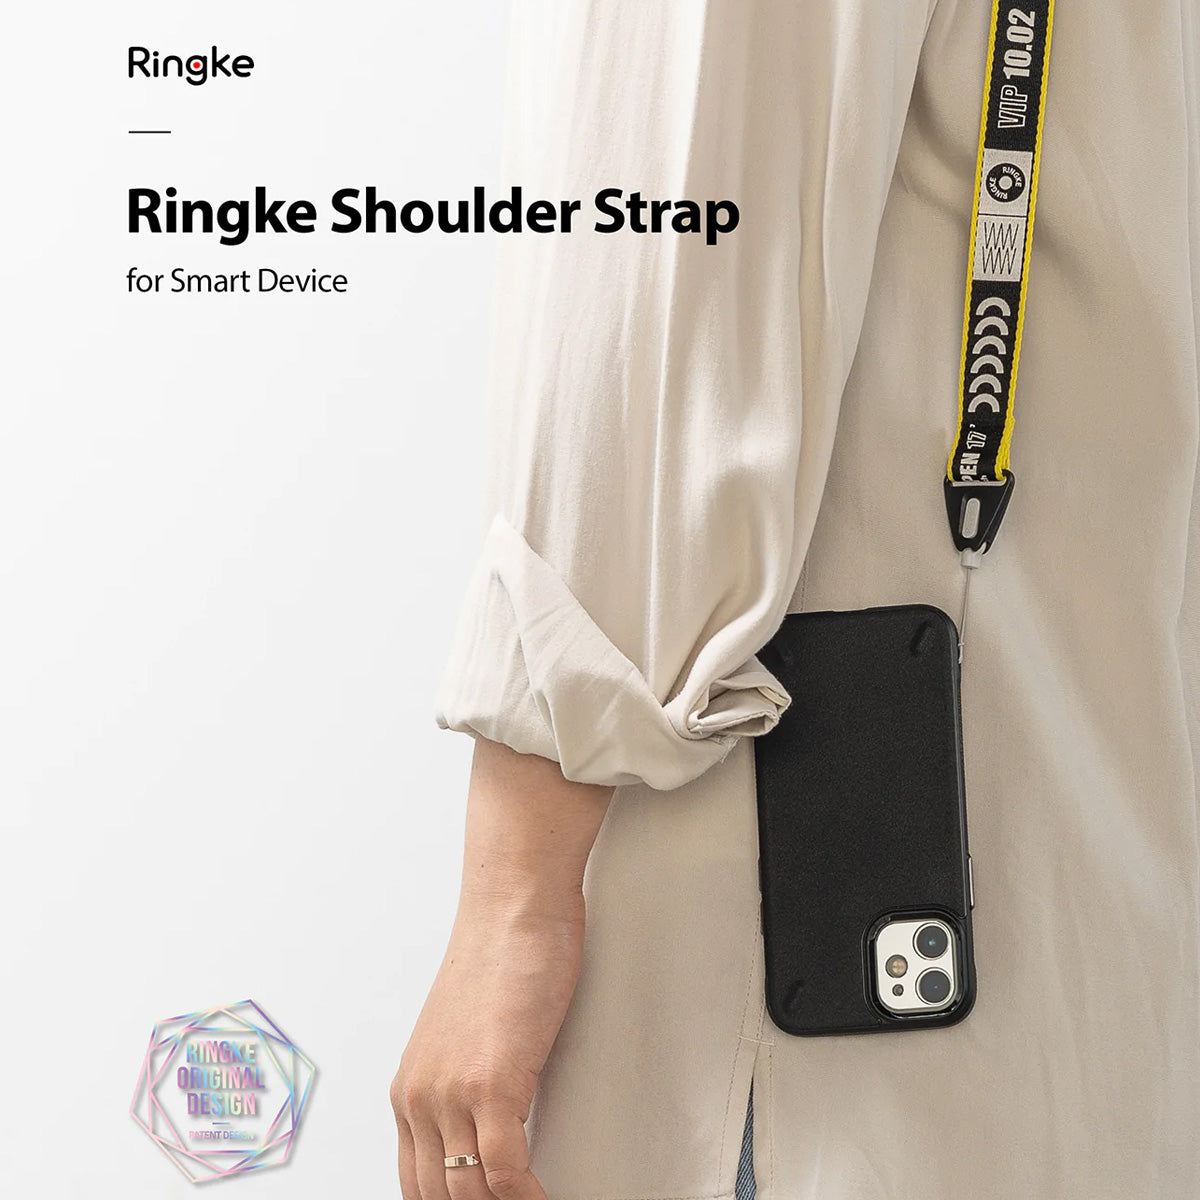 Ringke Shoulder Strap